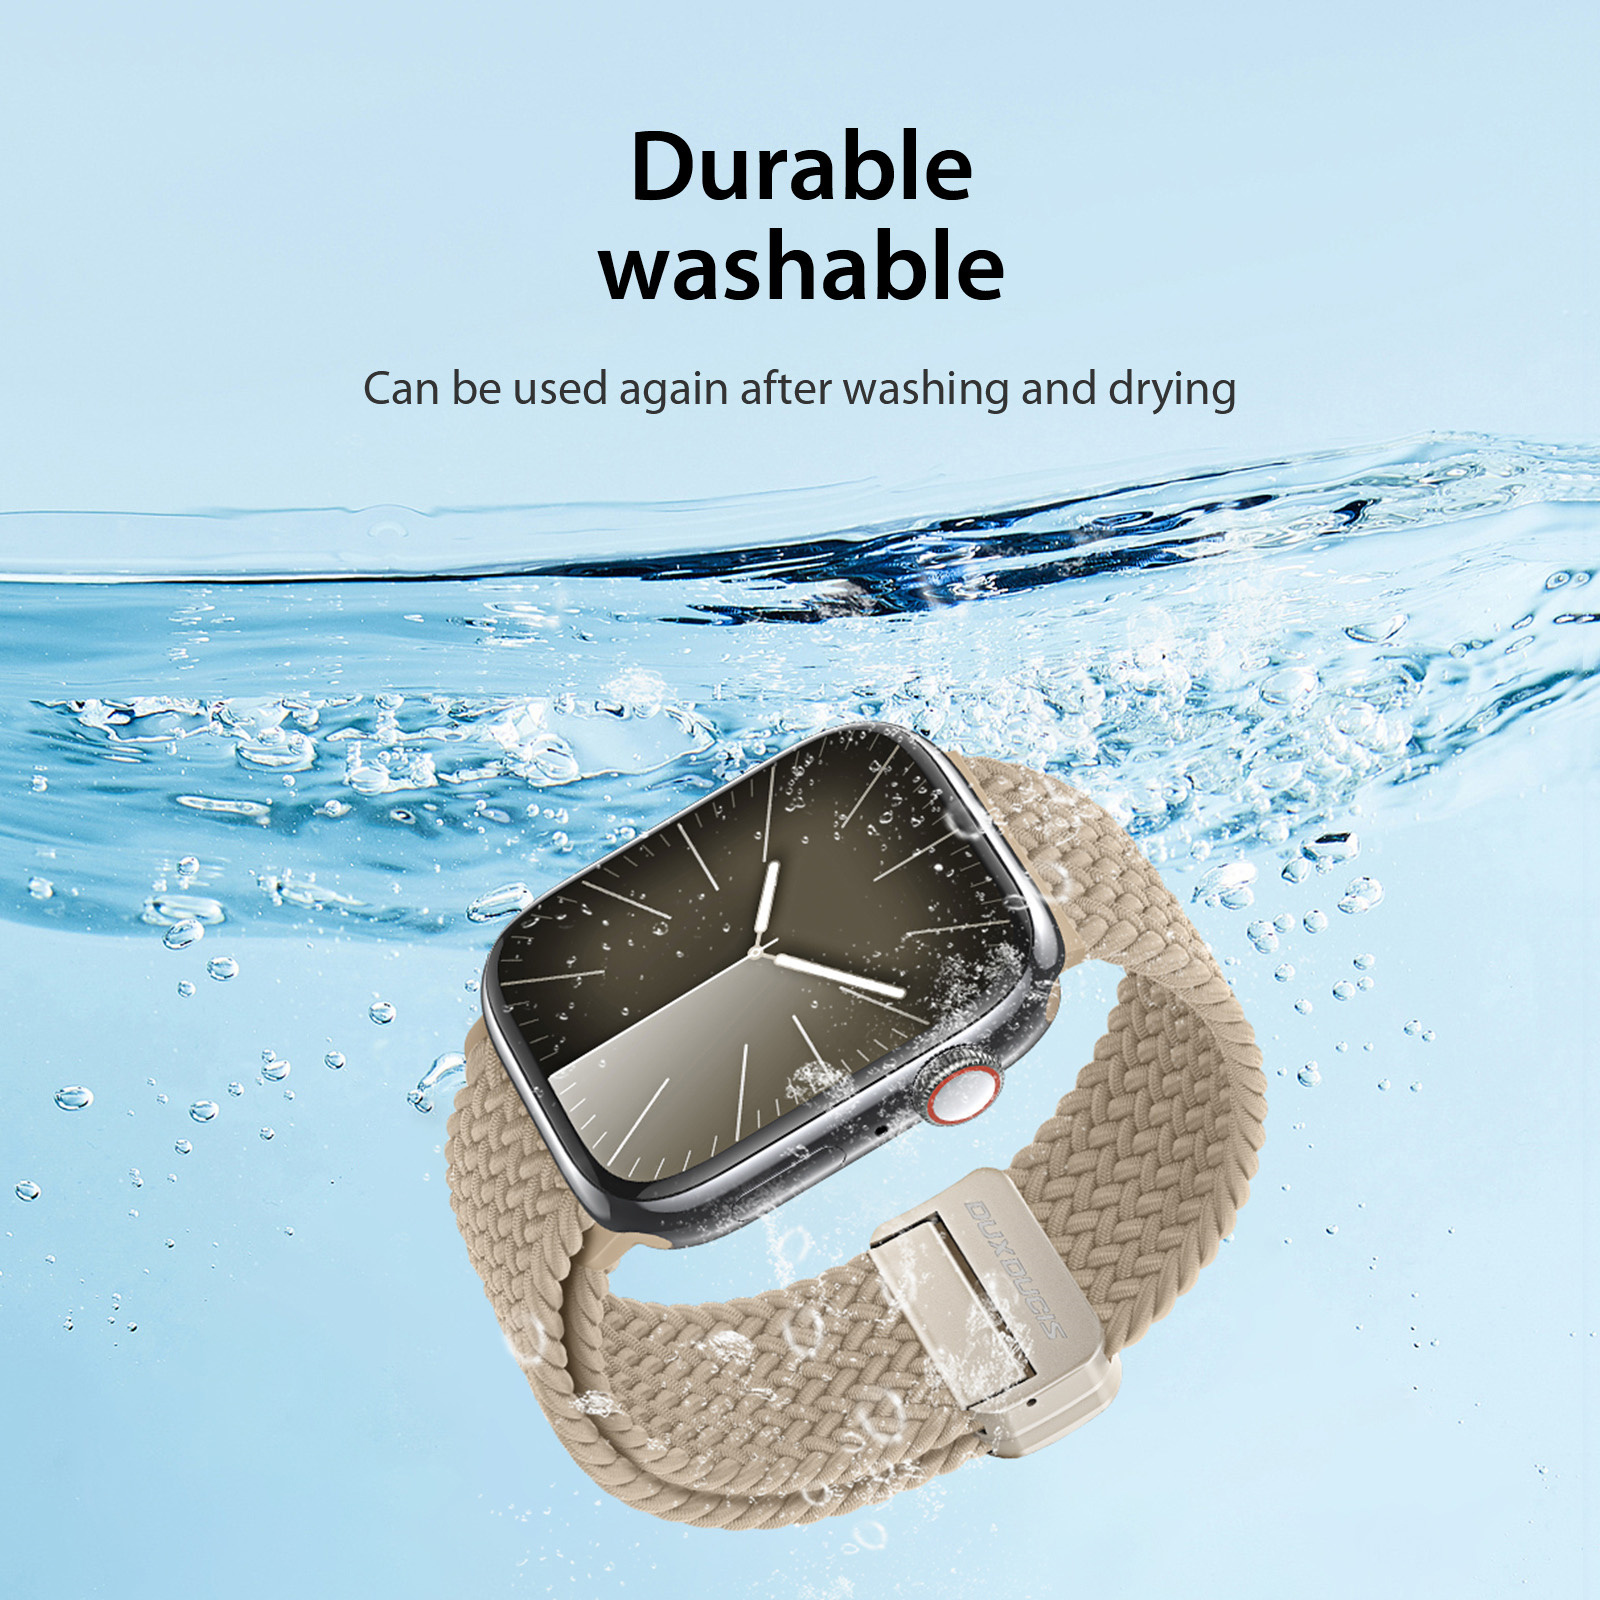 Dây đeo Vải Dệt Dux Ducis Mixture Pro Series Dành Cho Apple Watch Ultra/ Apple Watch All Series_ Hàng chính hãng